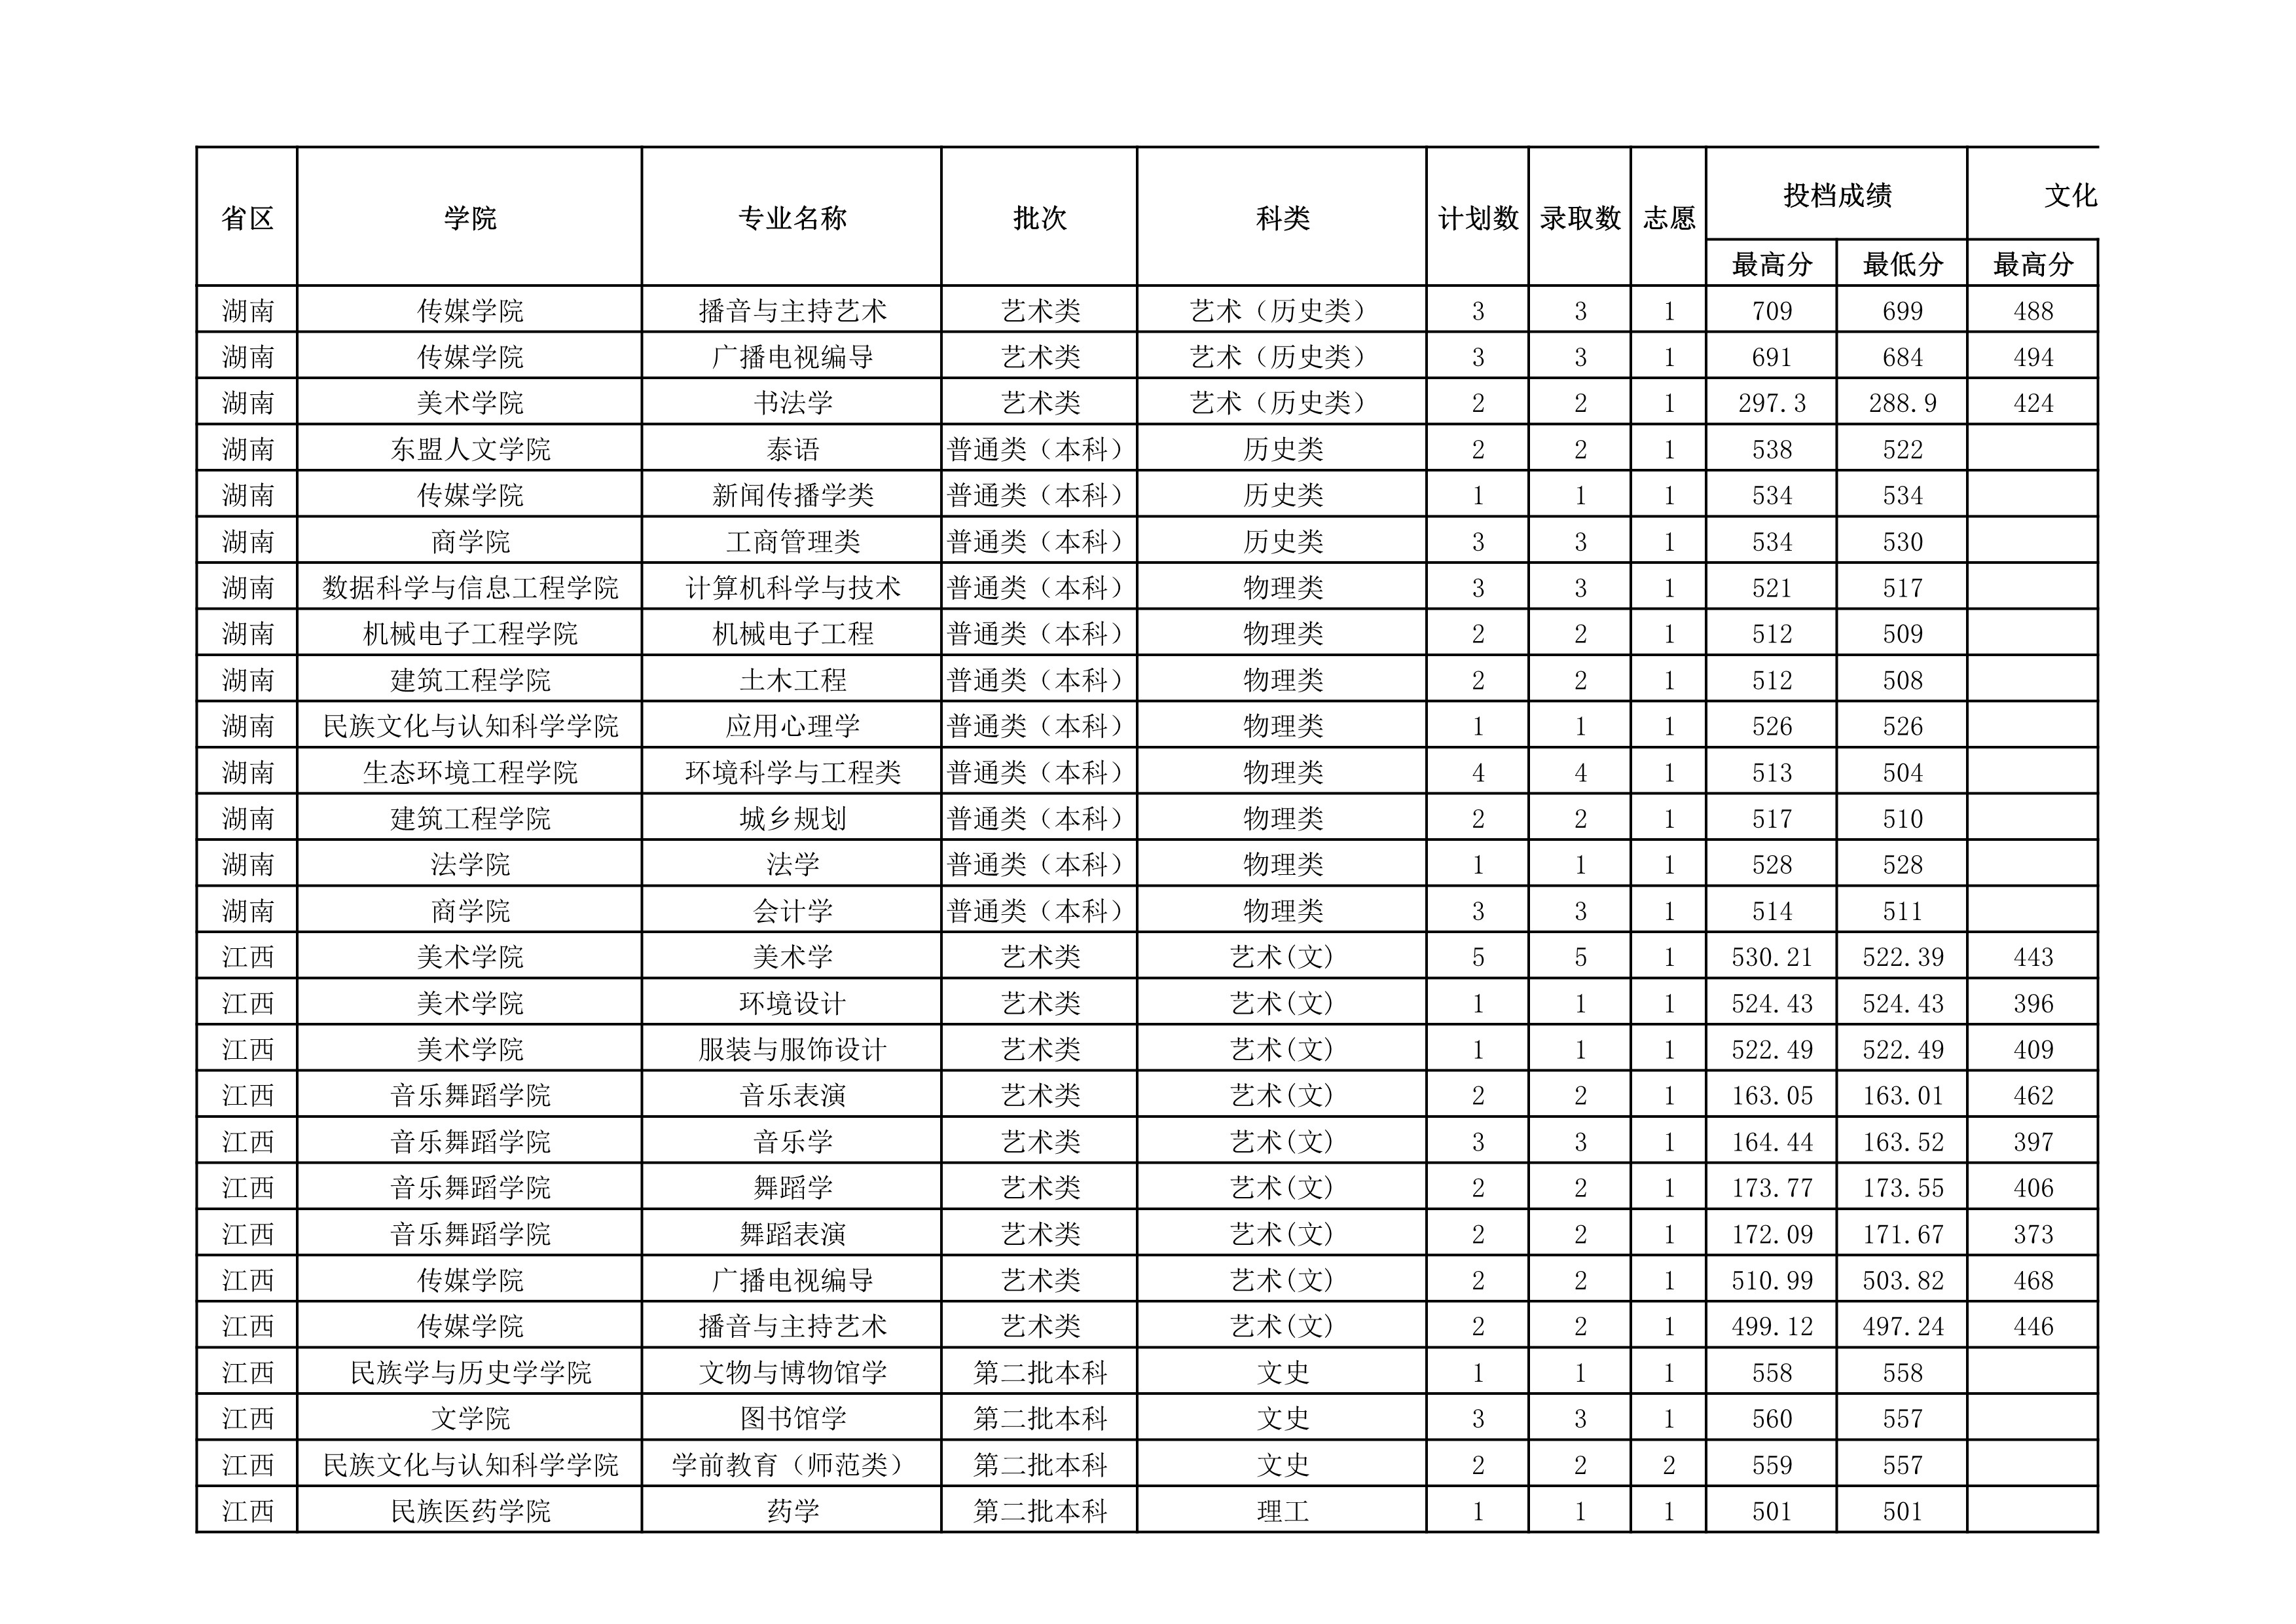 贵州民族大学2021年省外录取分数情况统计表_20220414154148_2.jpg